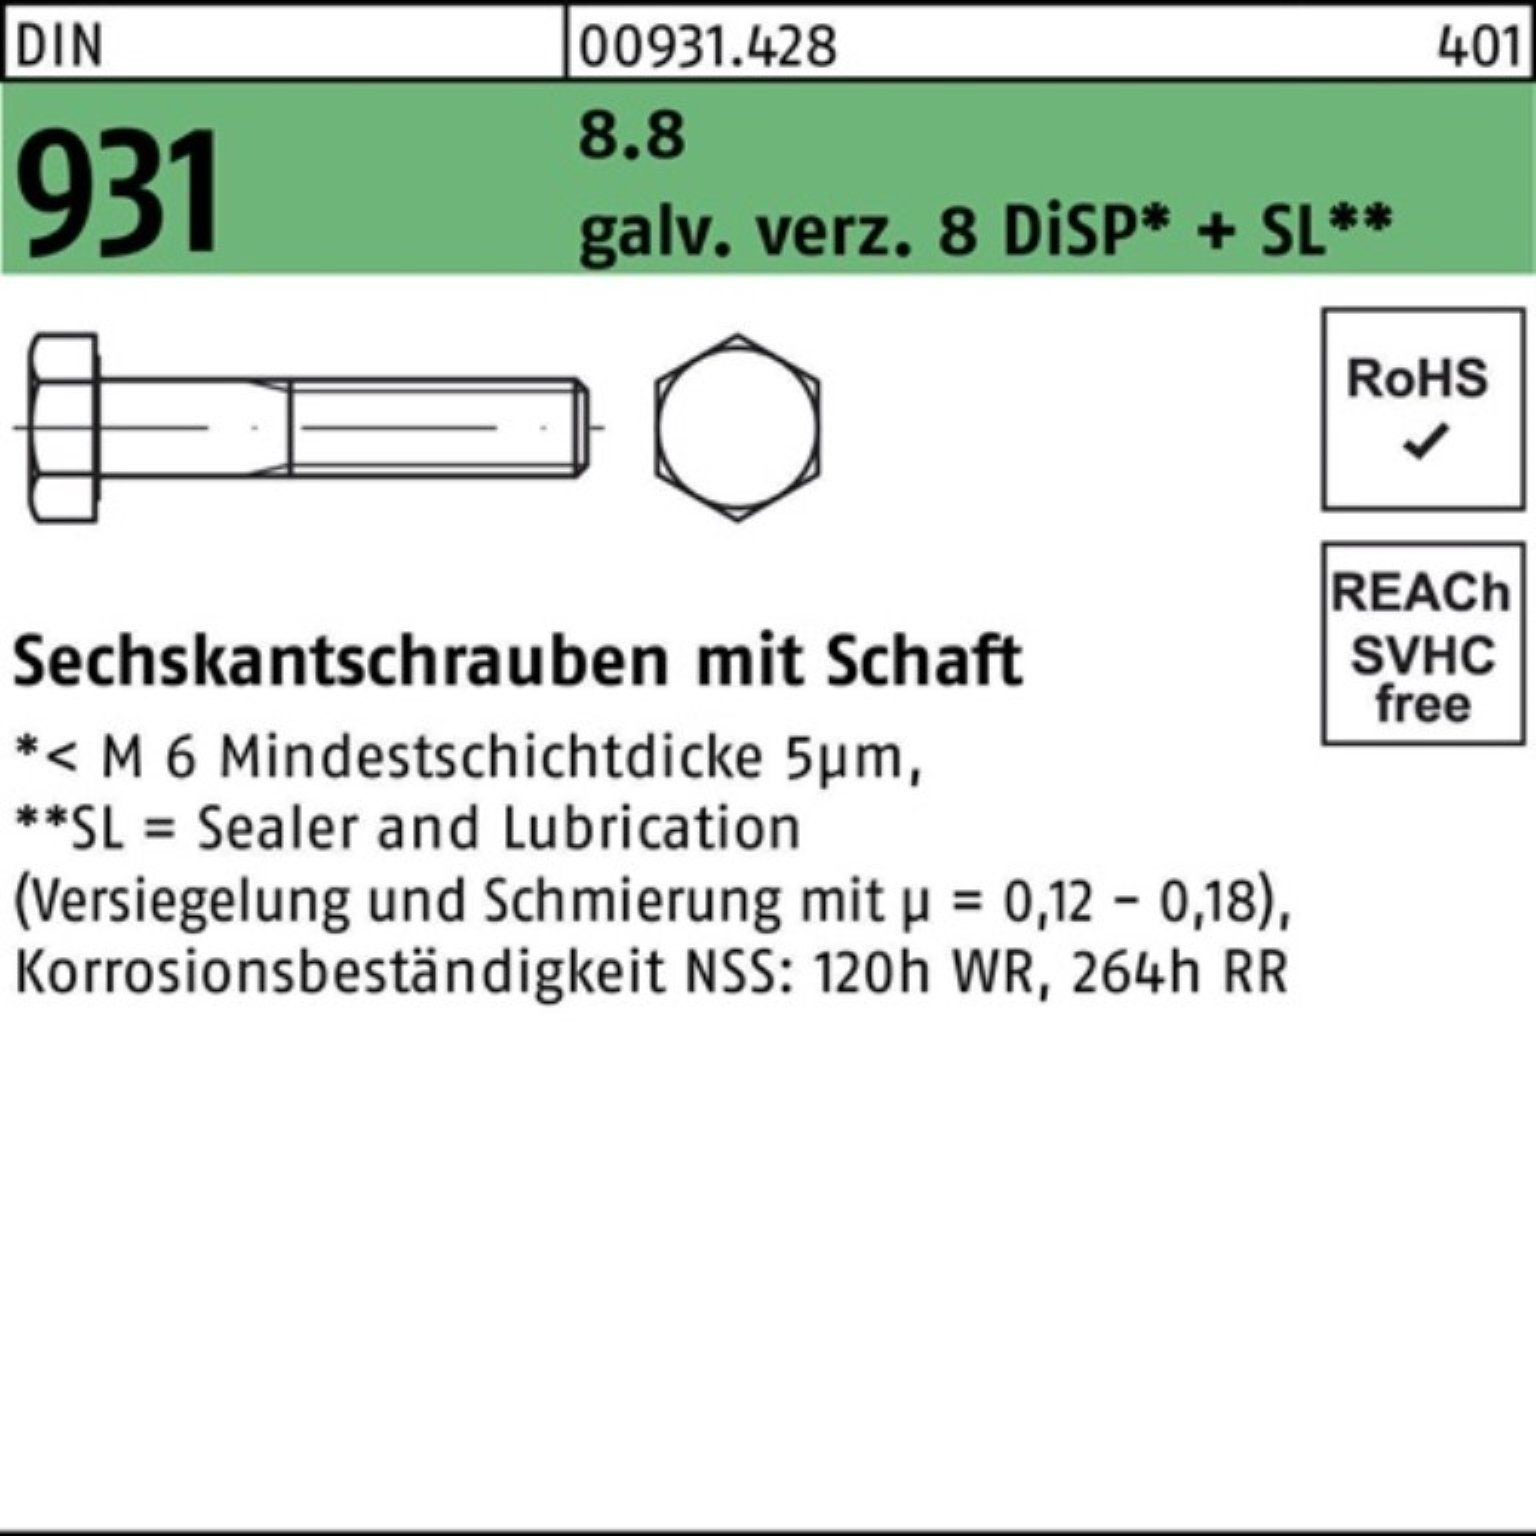 8.8 DiSP Zn 931 DIN + Schaft Pack Reyher 200er Sechskantschraube S 50 M5x Sechskantschraube gal